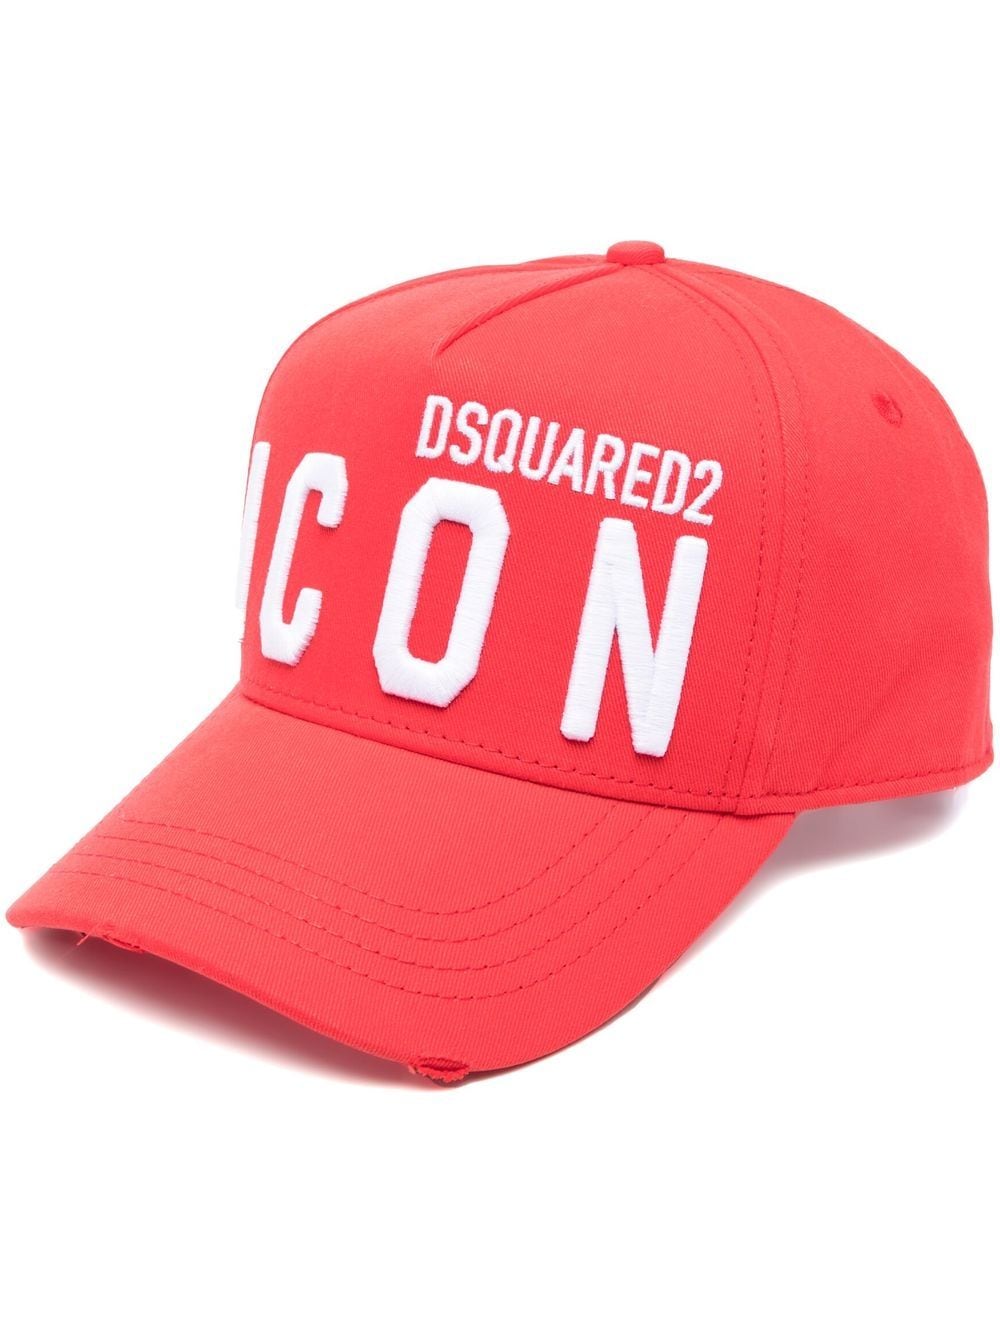 Dsquared2 BCM0412 ICON Baseball Cap - M2642 Red/White - Escape Menswear